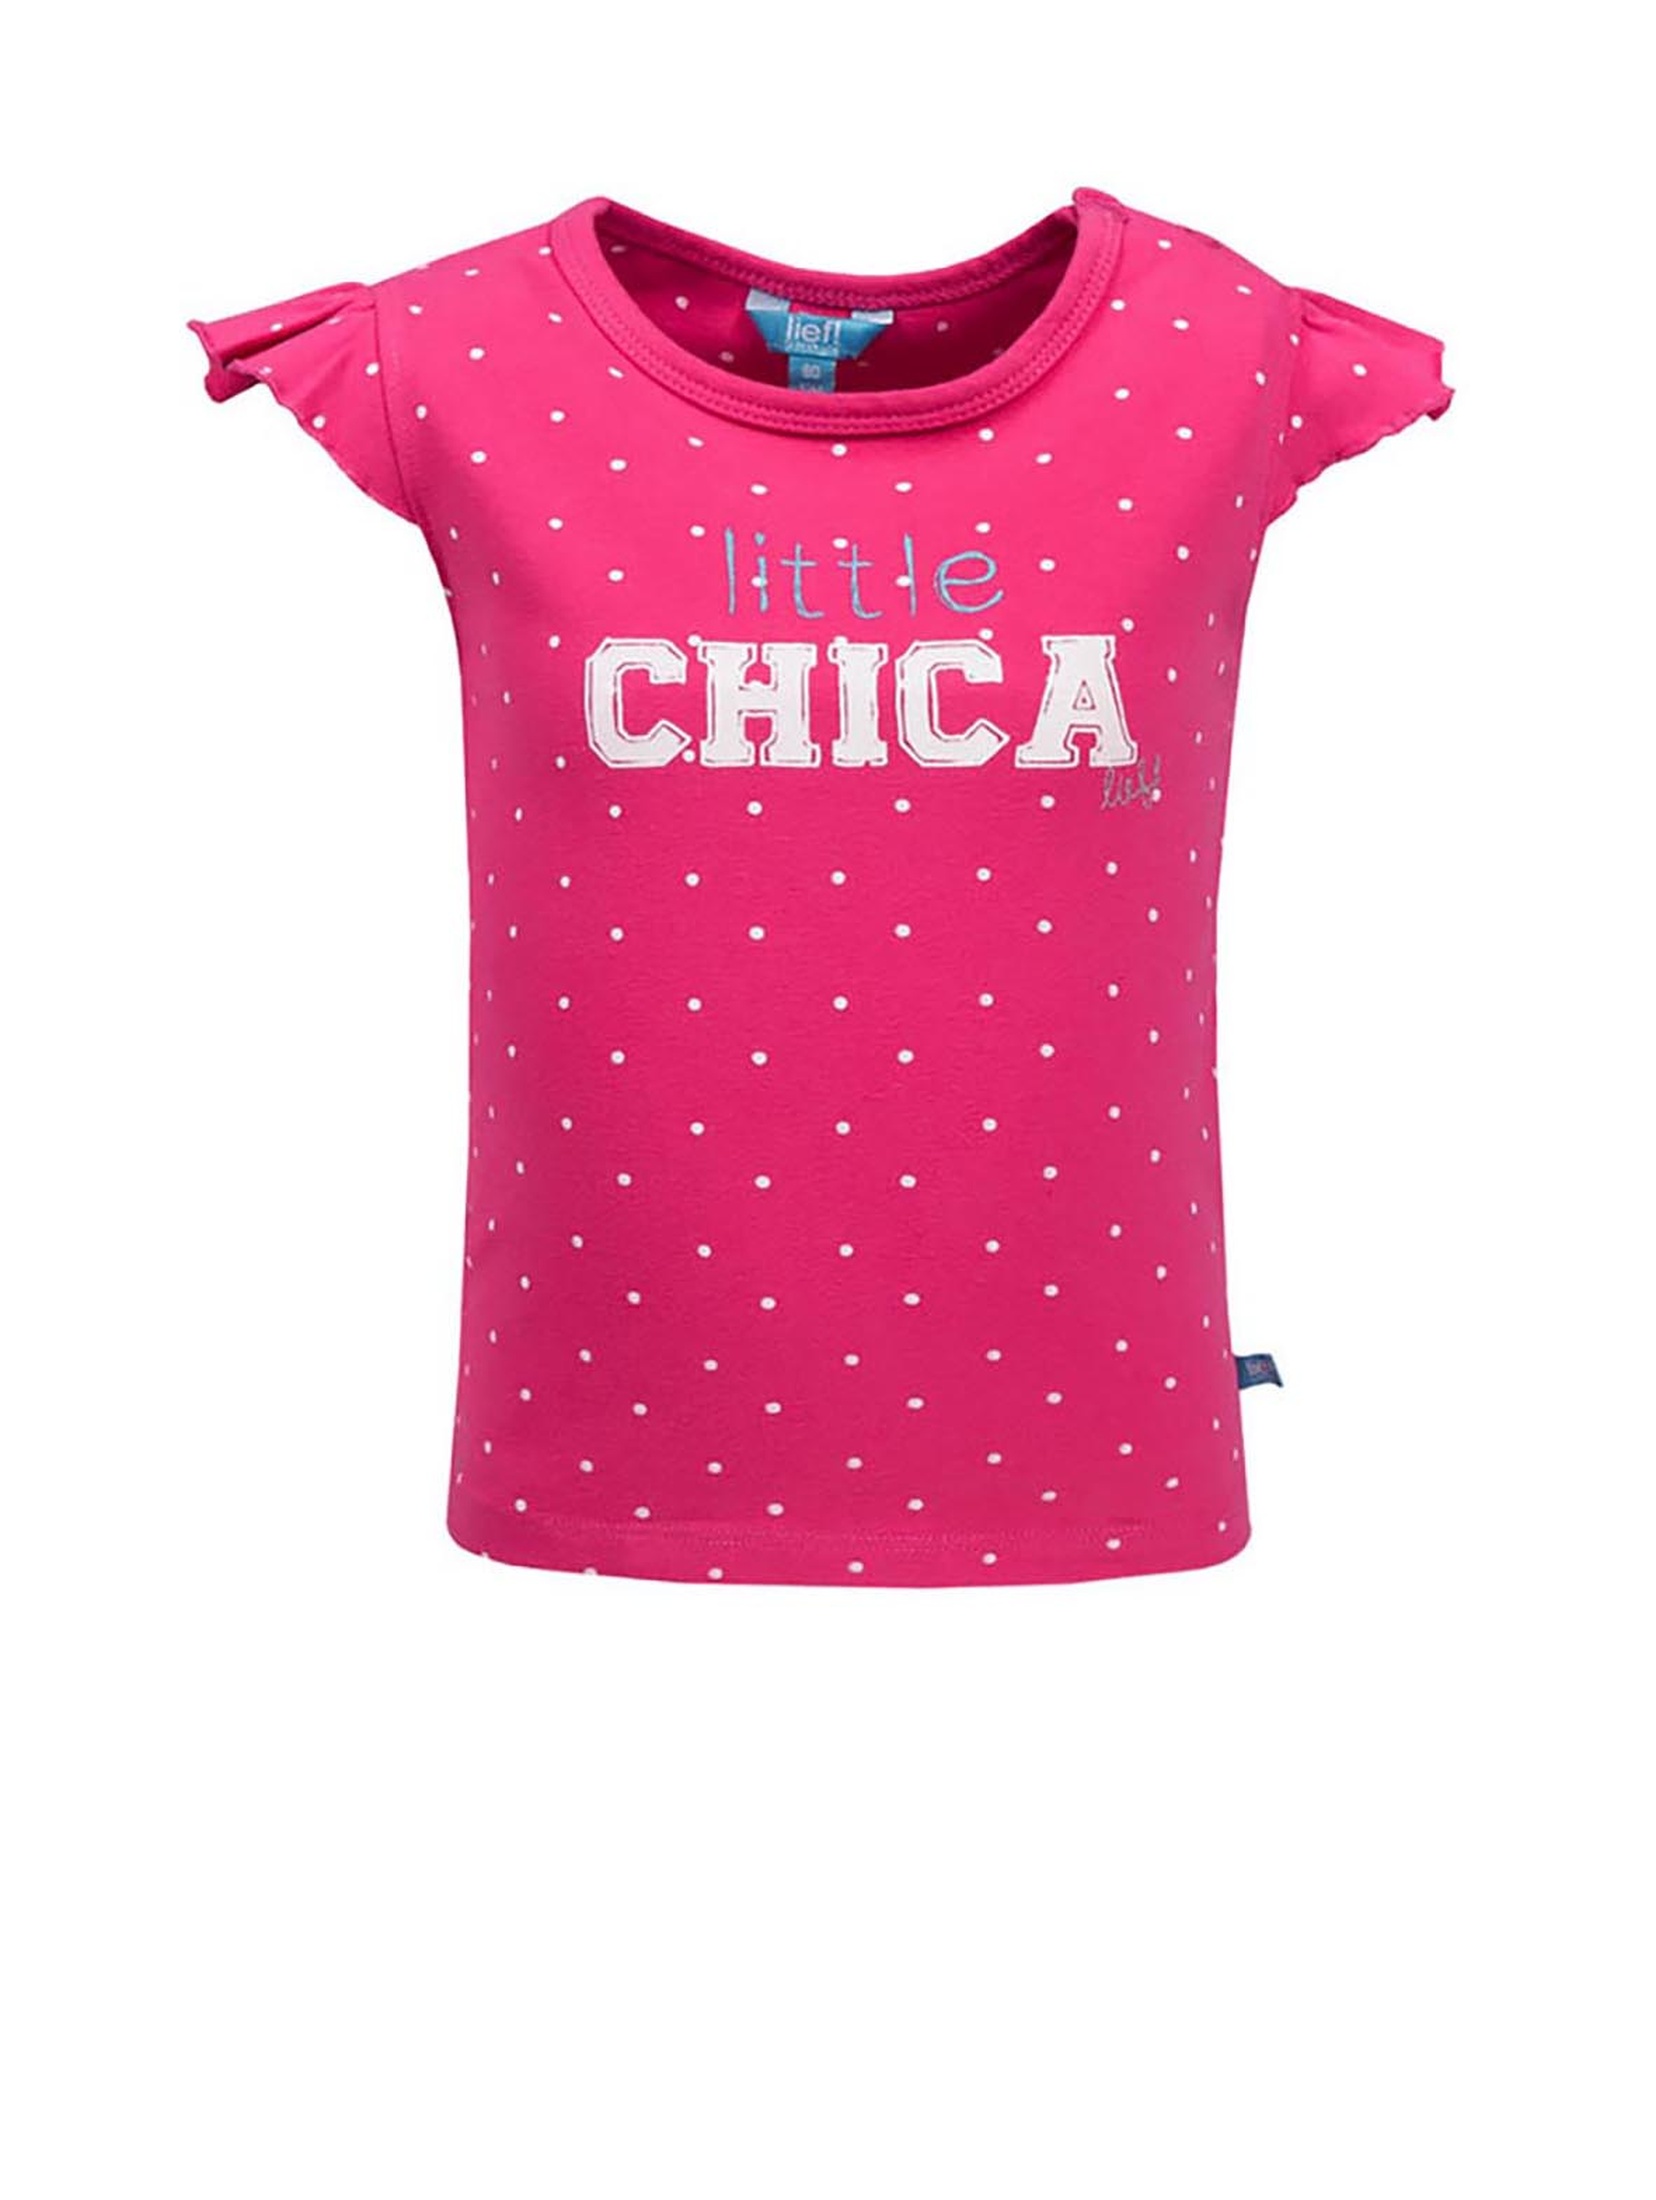 T-shirt dziewczęcy różowy - Little Chica - Lief